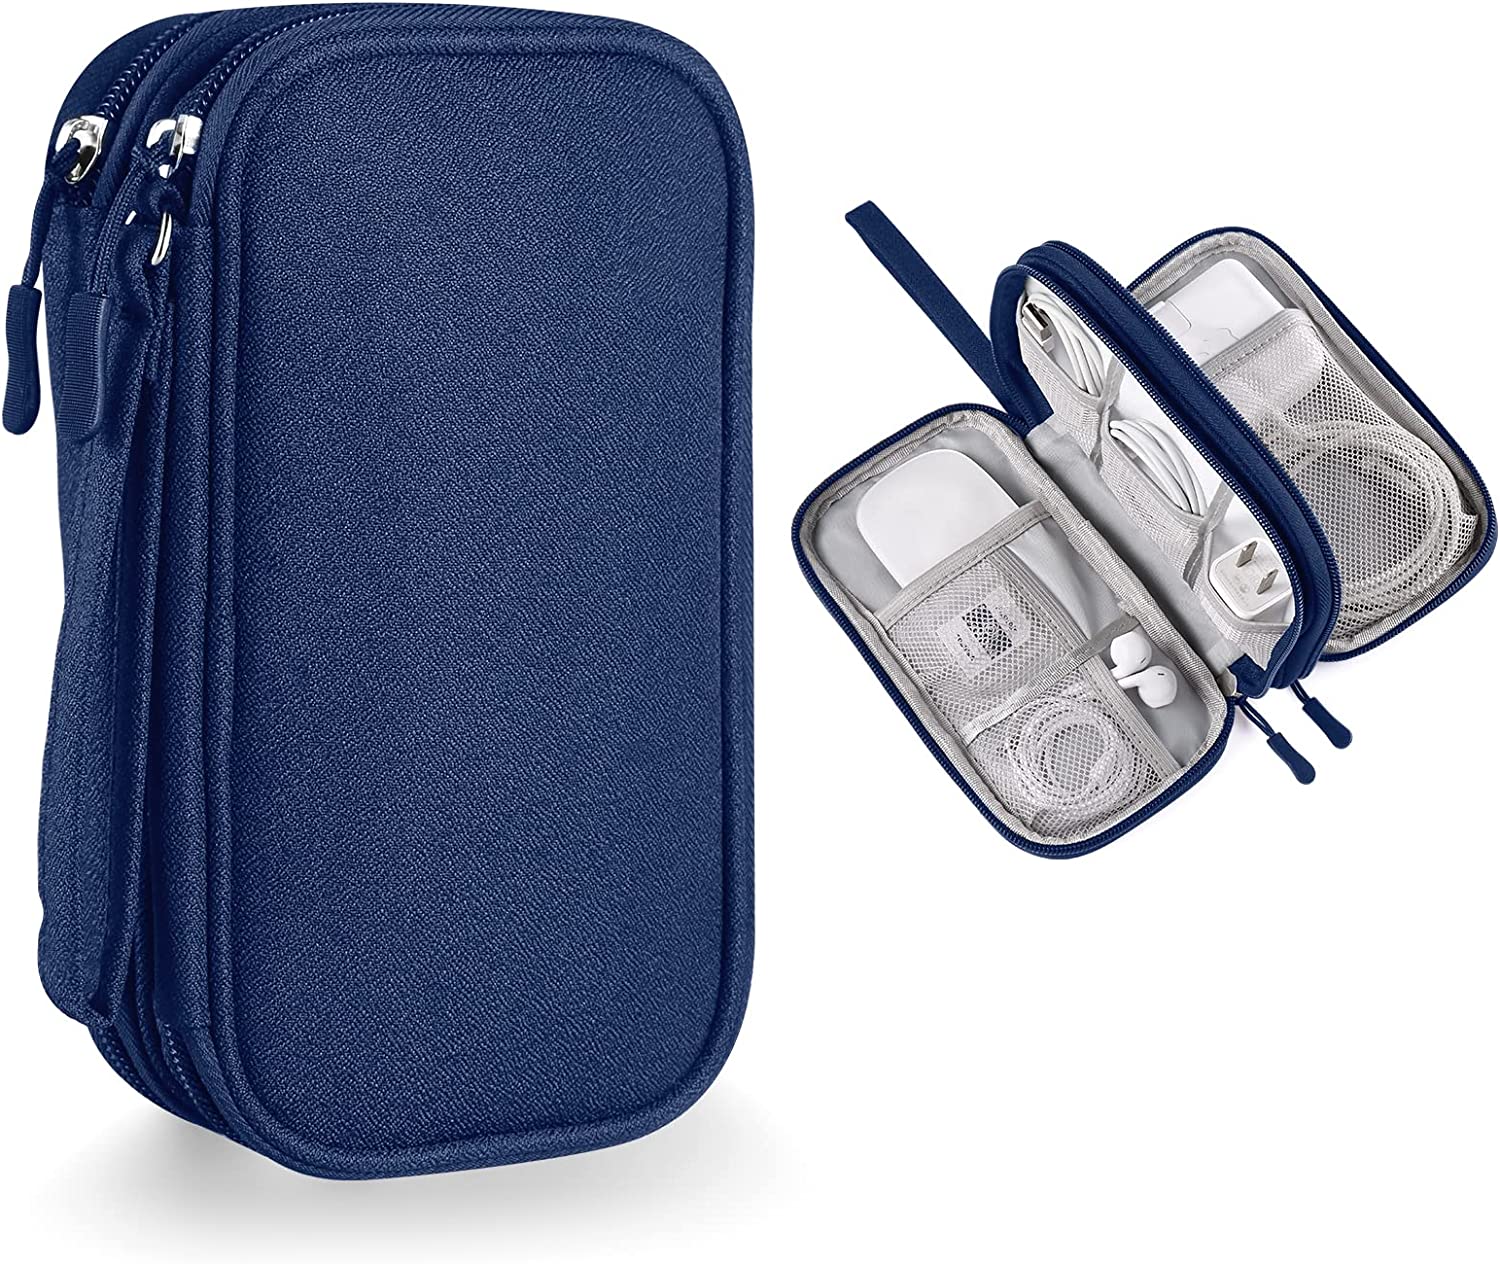 소형 전자제품 휴대용 케이스 가방, 테크 & 액세서리용 베베게코스 여행용 가젯 정리 파우치(소형, 네이비 블루)